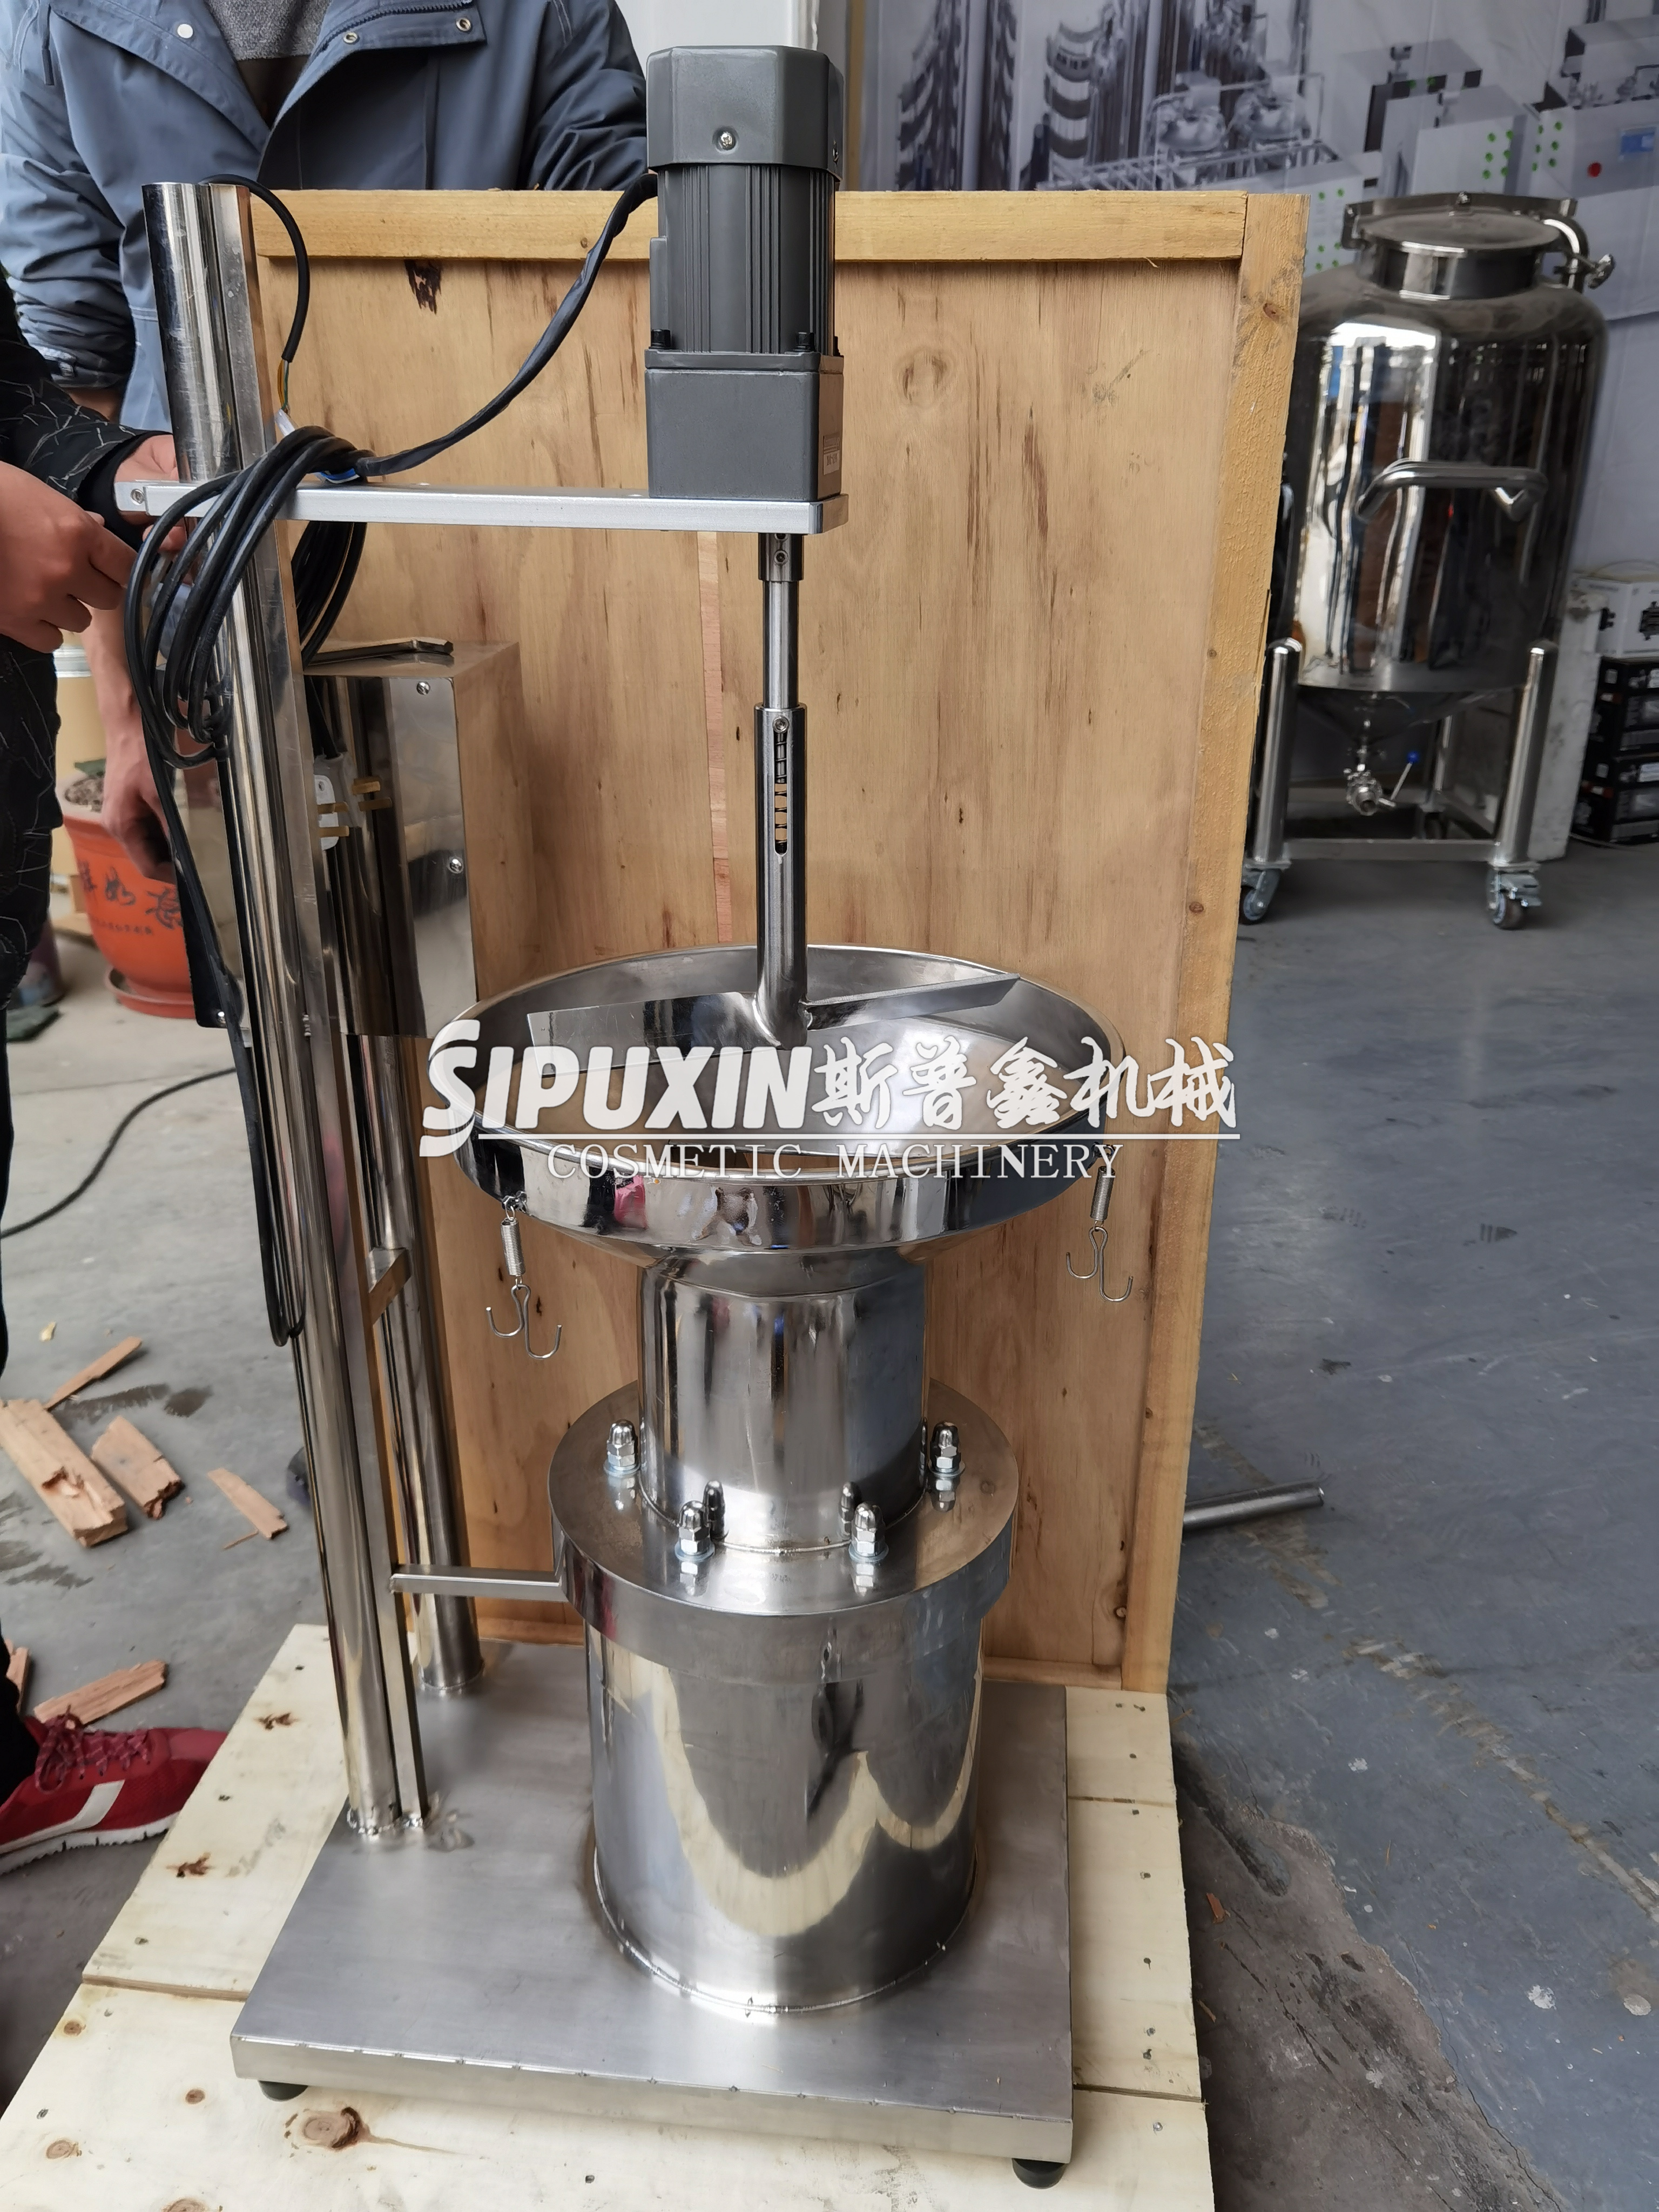 Machine de tamis de fondation Sipuxin pour la poudre cosmétique